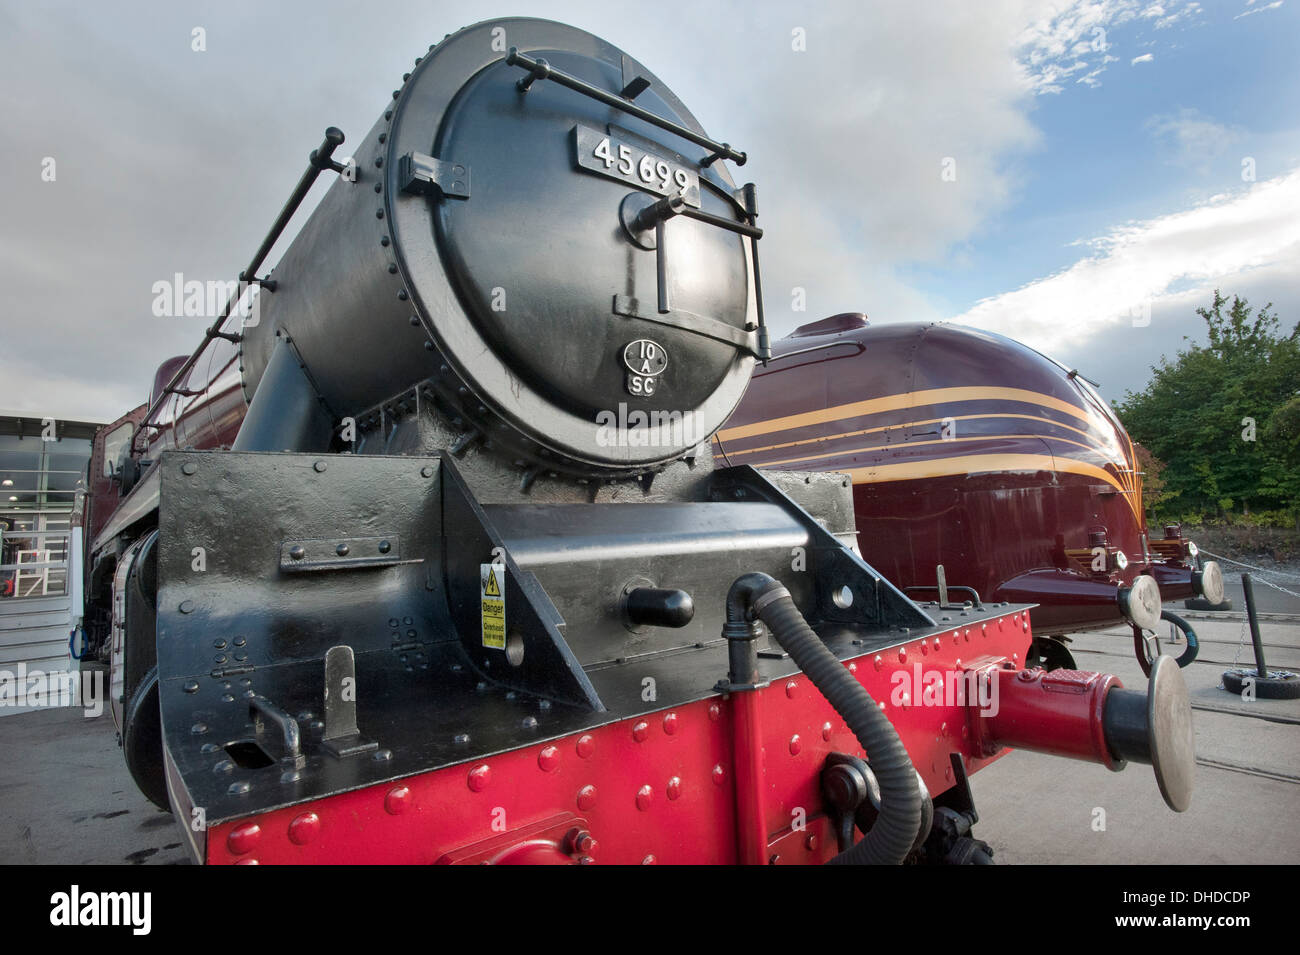 LMS (London Midland) Escocés Julbilee locomotora de vapor clase 45699, 'GALATEA' se sitúa delante de LMS racionalizado "Princess" coronación No.6229 clase 'Duchess de Hamilton' en el National Railway Museum en Shildon desbordamiento de museos, en el Condado de Durham. Foto de stock